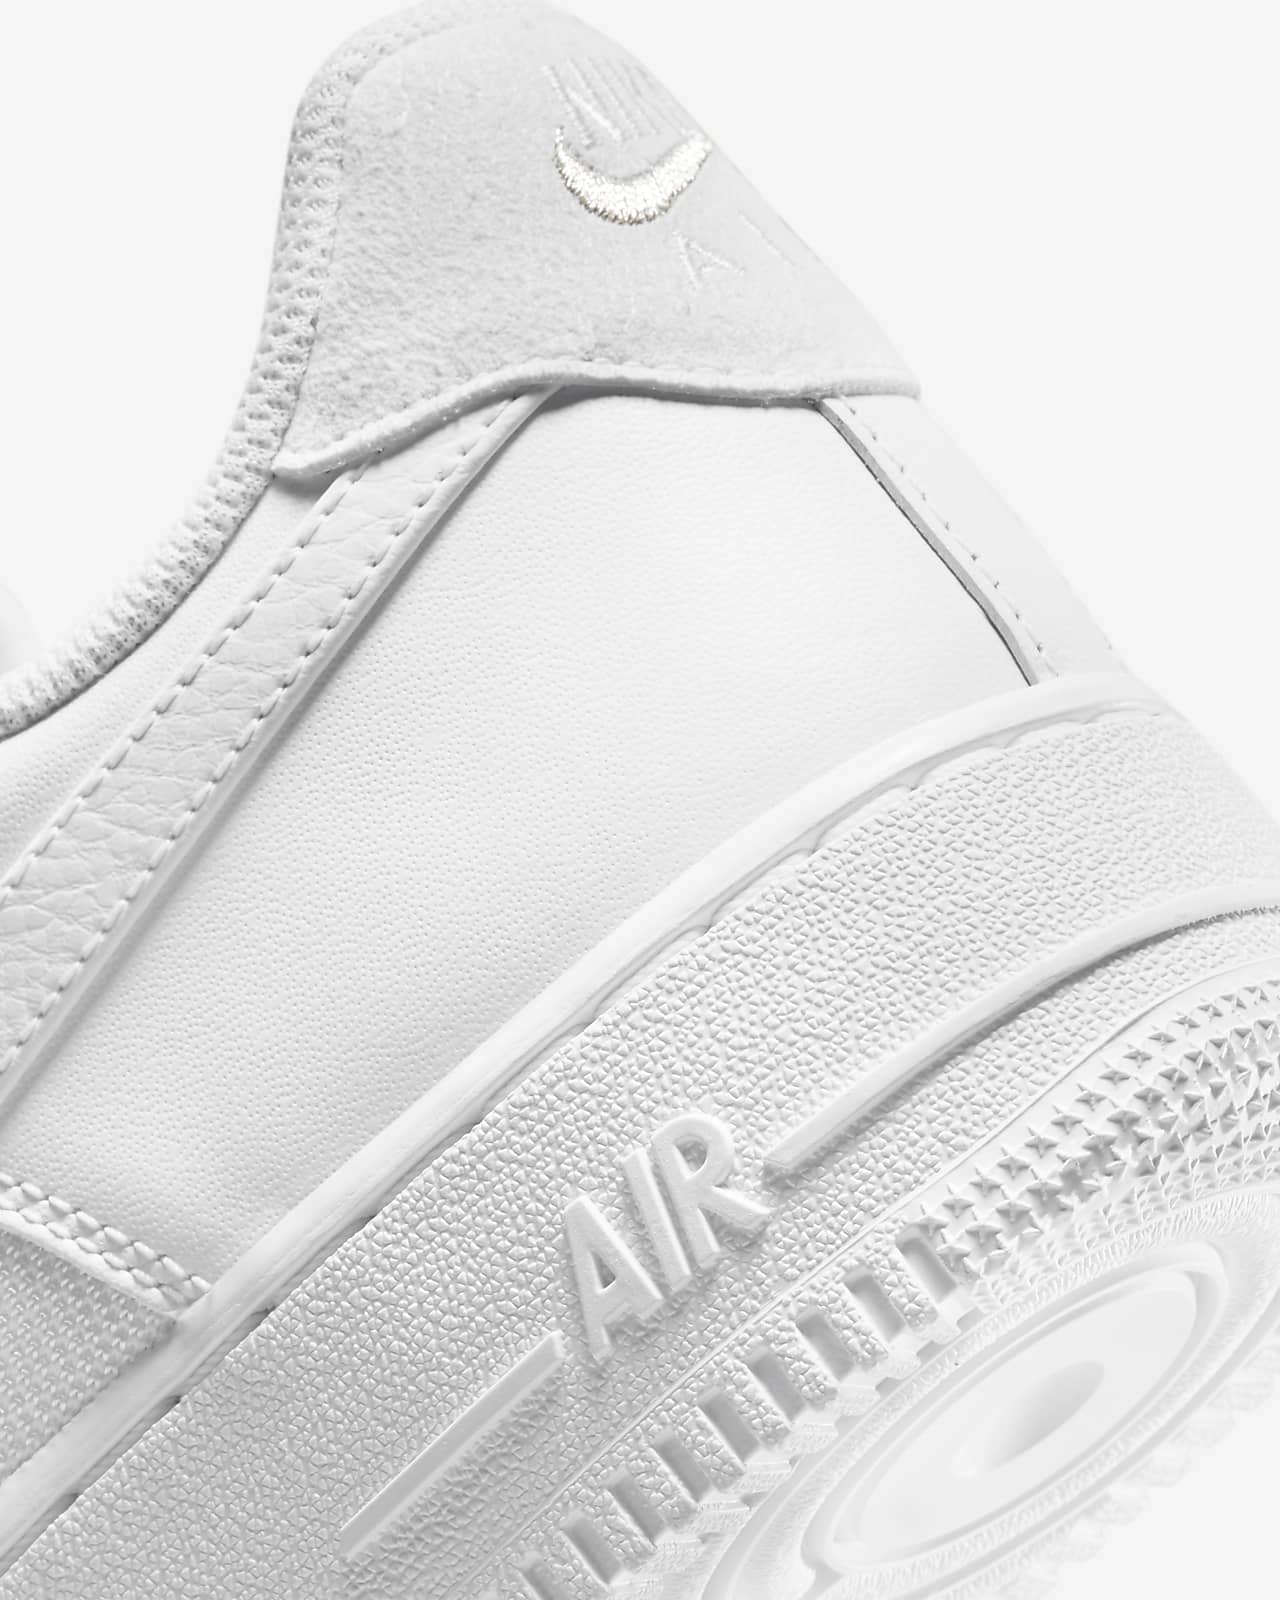 Nike Air Force 1 &07 LV8 - White